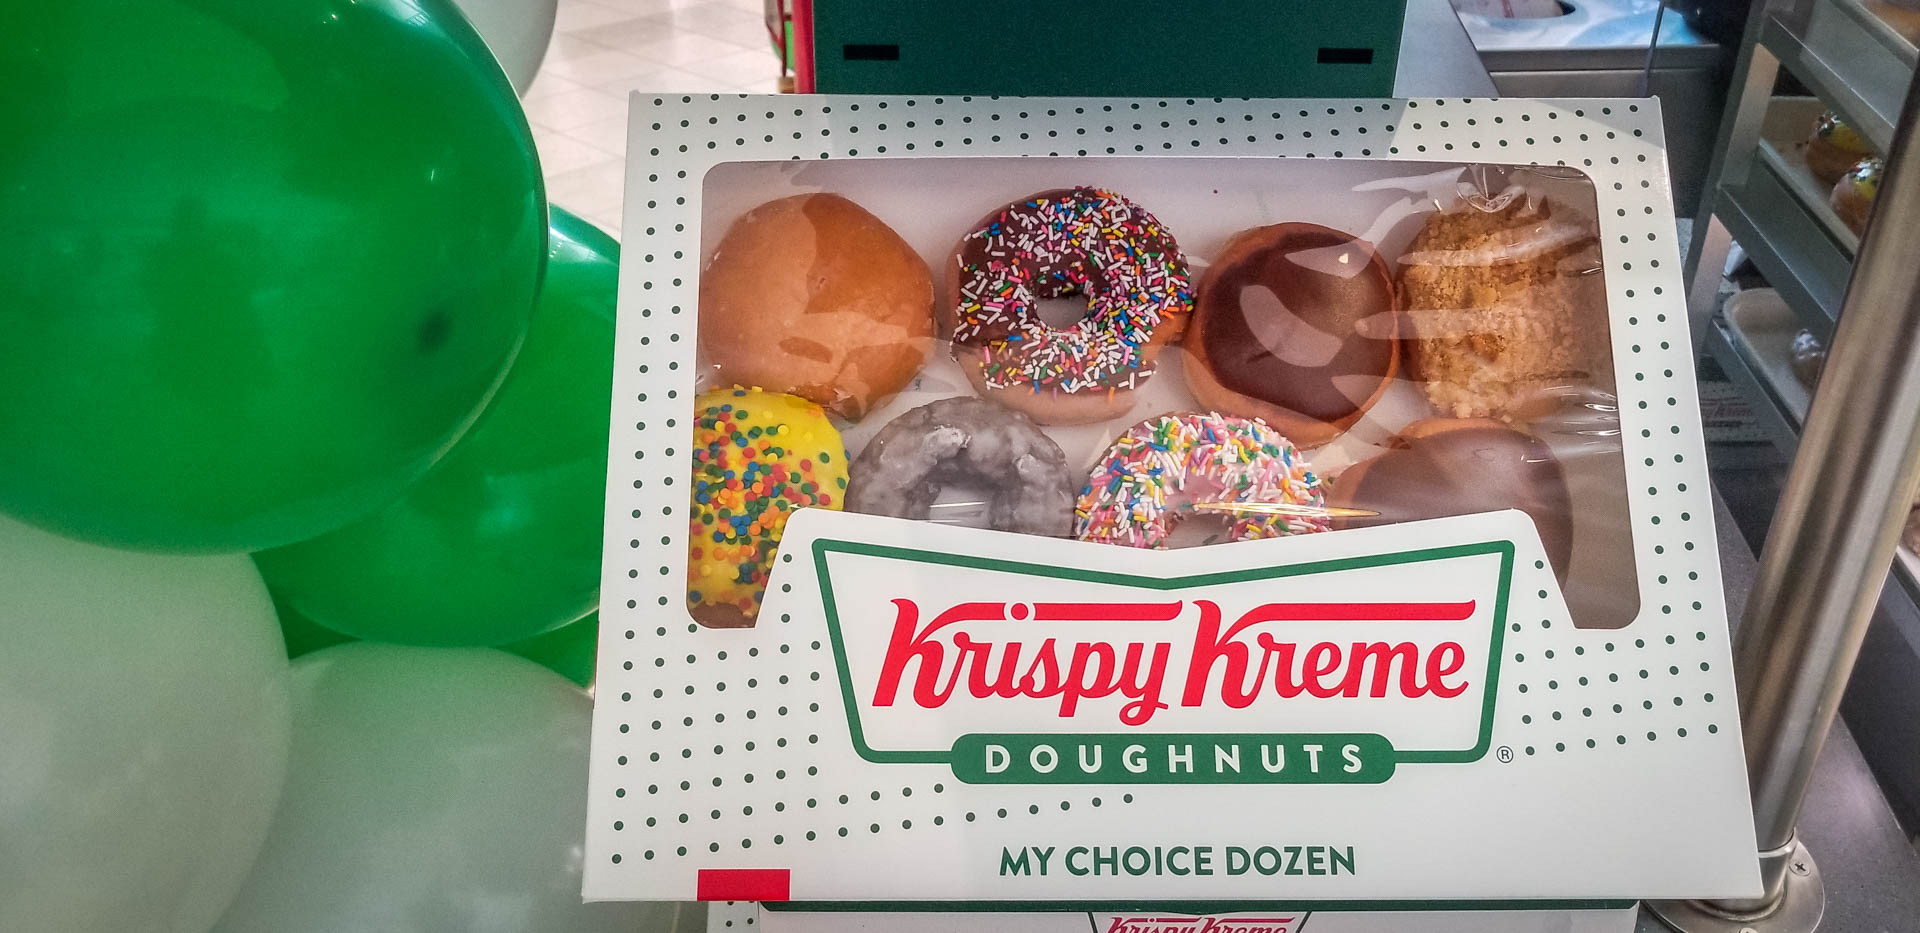 Krispy Kreme Comes To Crabtree Valley 919raleigh